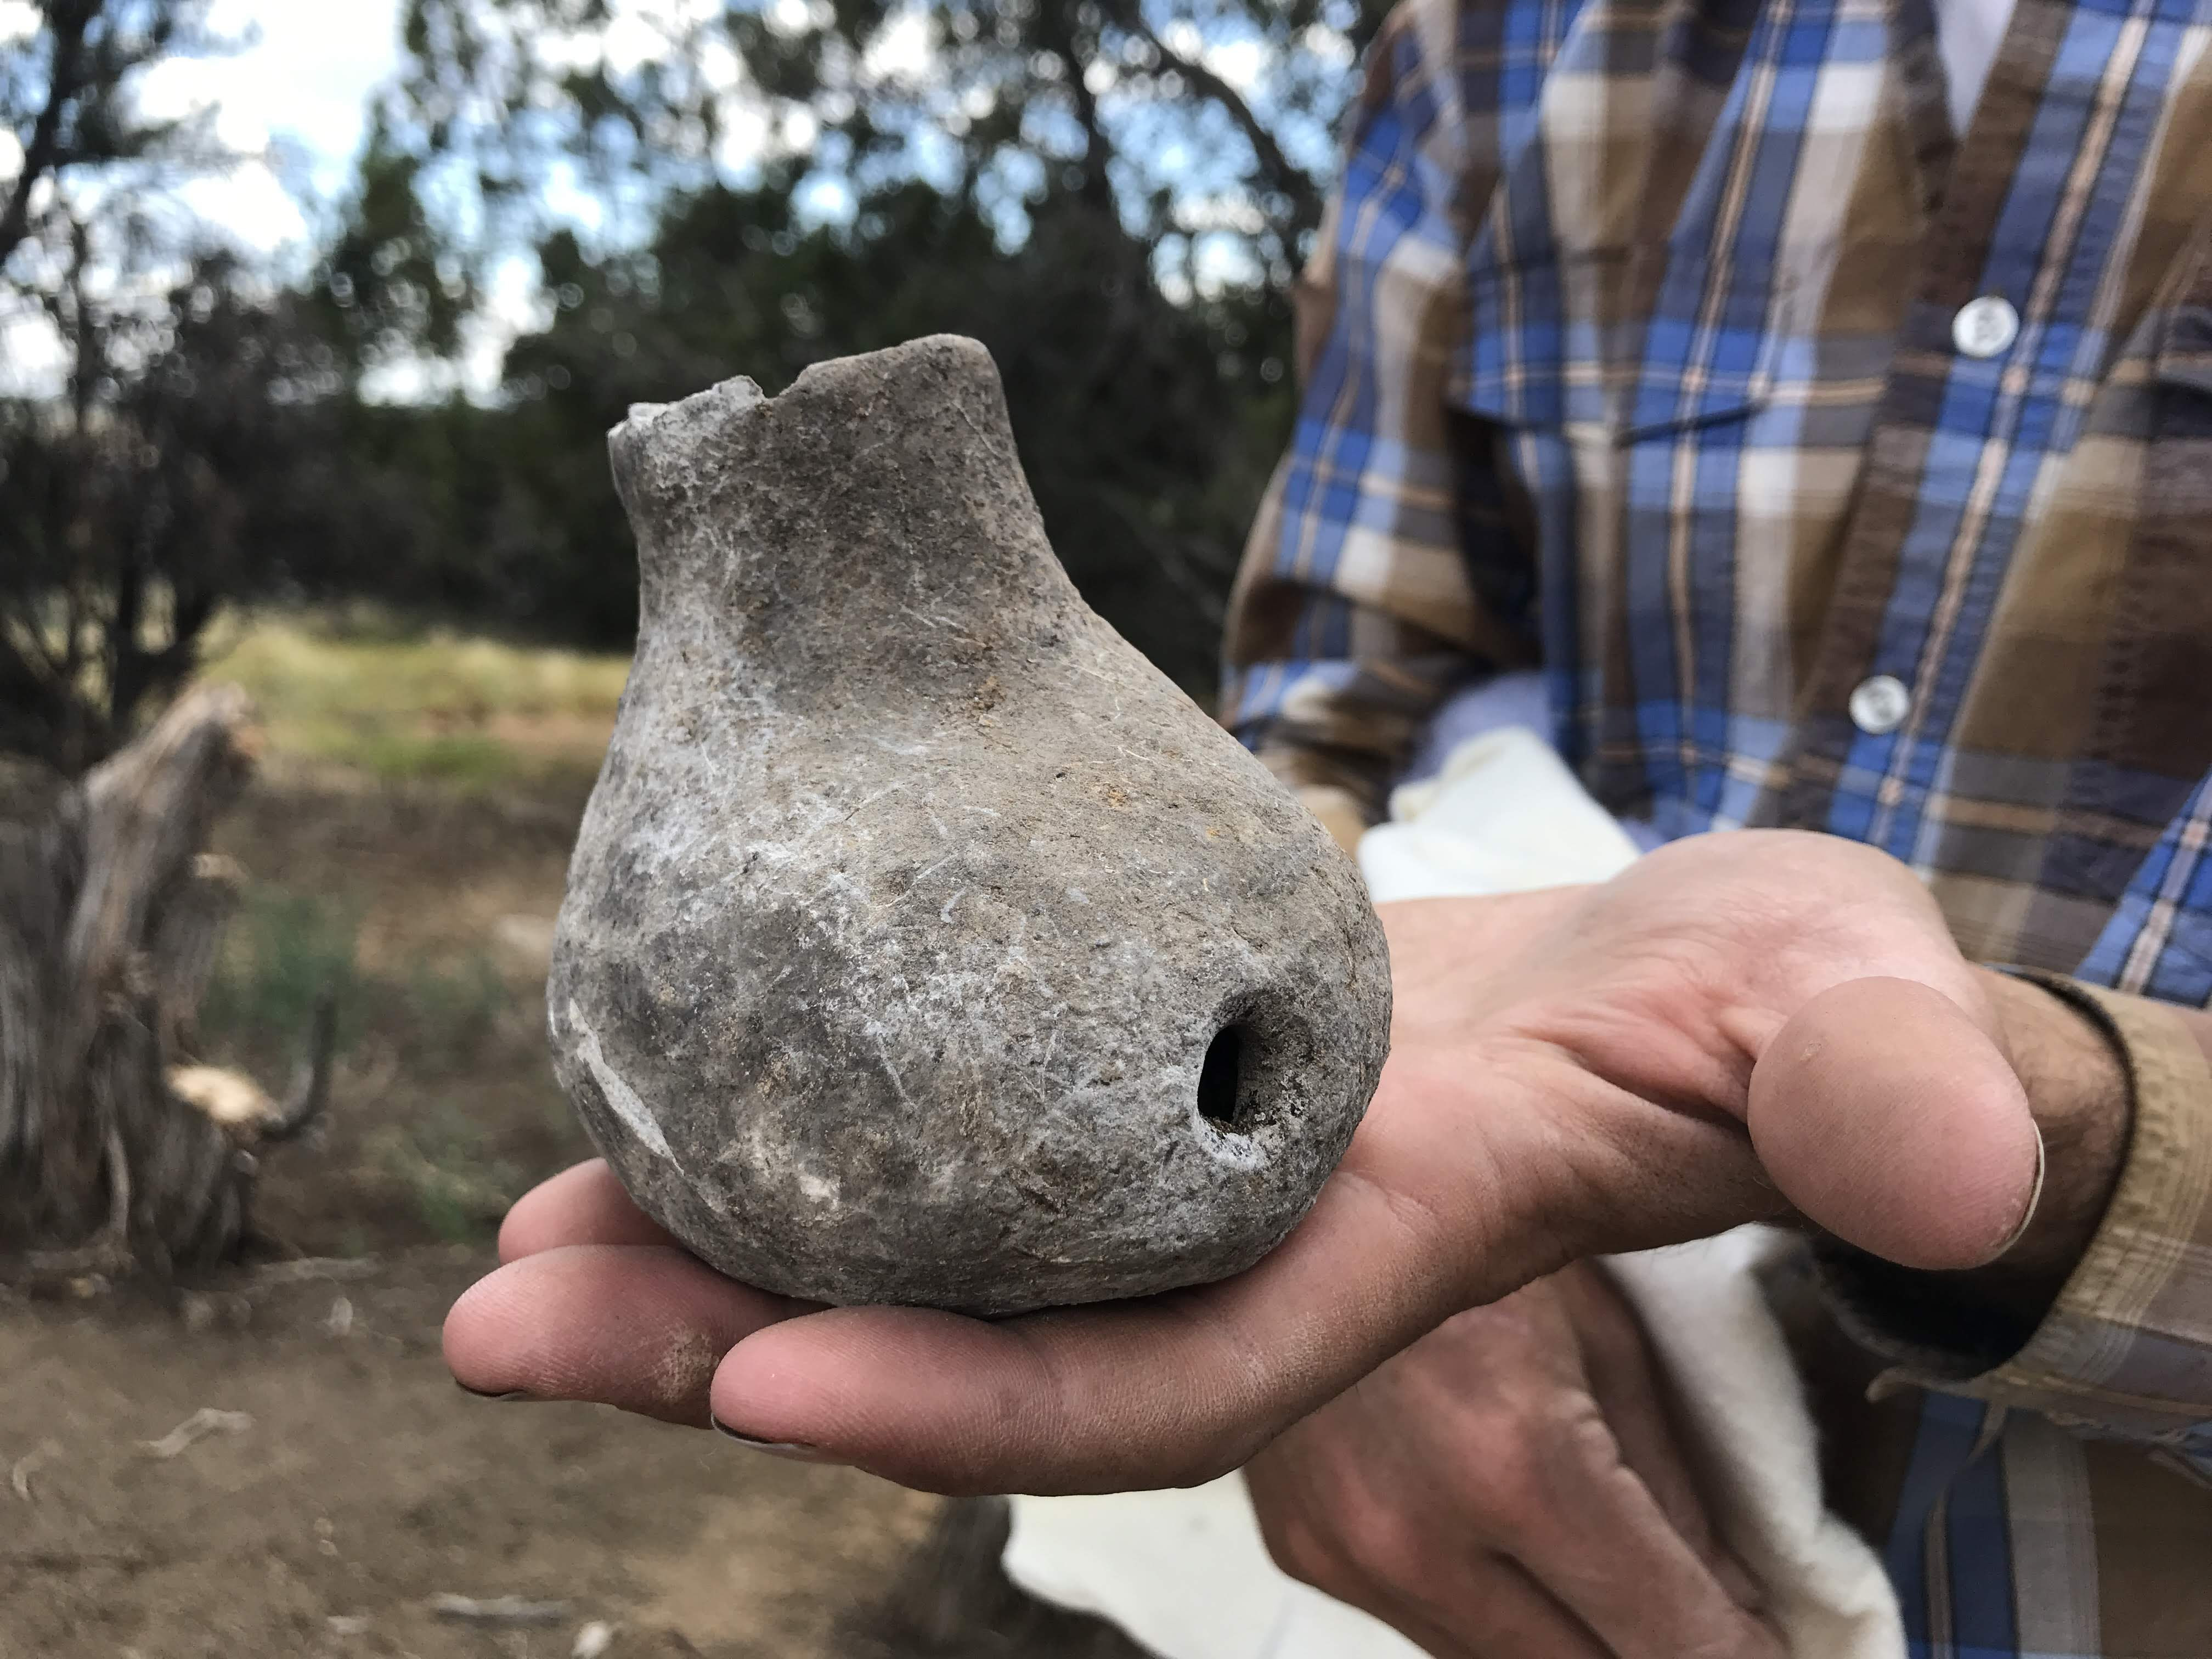 Tribal artifact found in Durango detail image